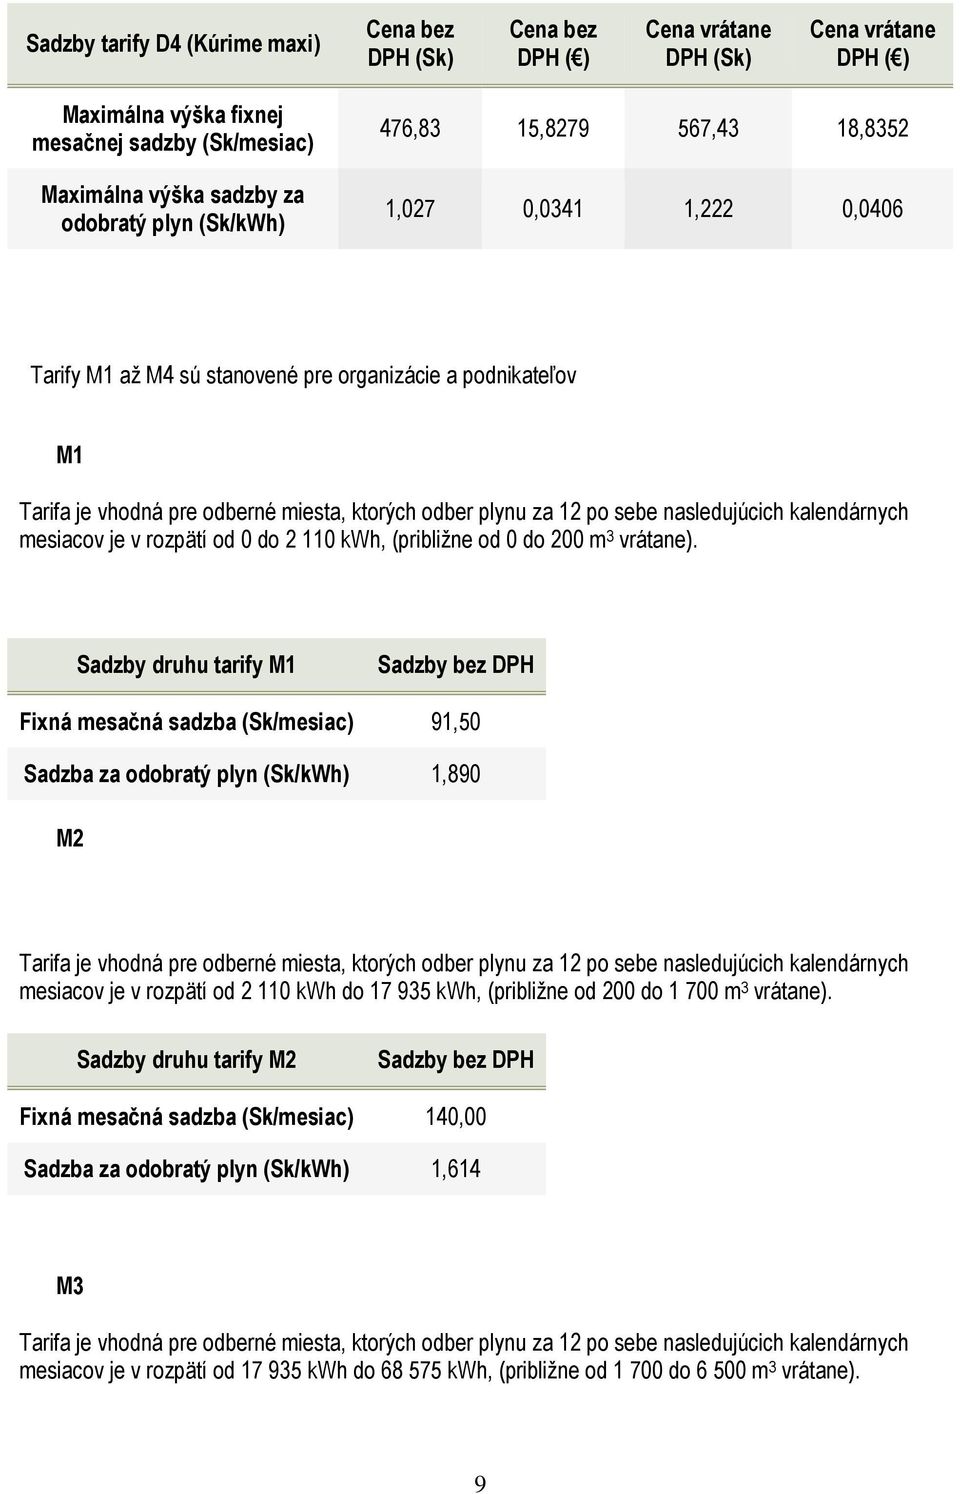 Sadzby druhu tarify M1 Sadzby bez DPH Fixná mesačná sadzba (Sk/mesiac) 91,50 Sadzba za 1,890 M2 Tarifa je vhodná pre odberné miesta, ktorých odber plynu za 12 po sebe nasledujúcich kalendárnych